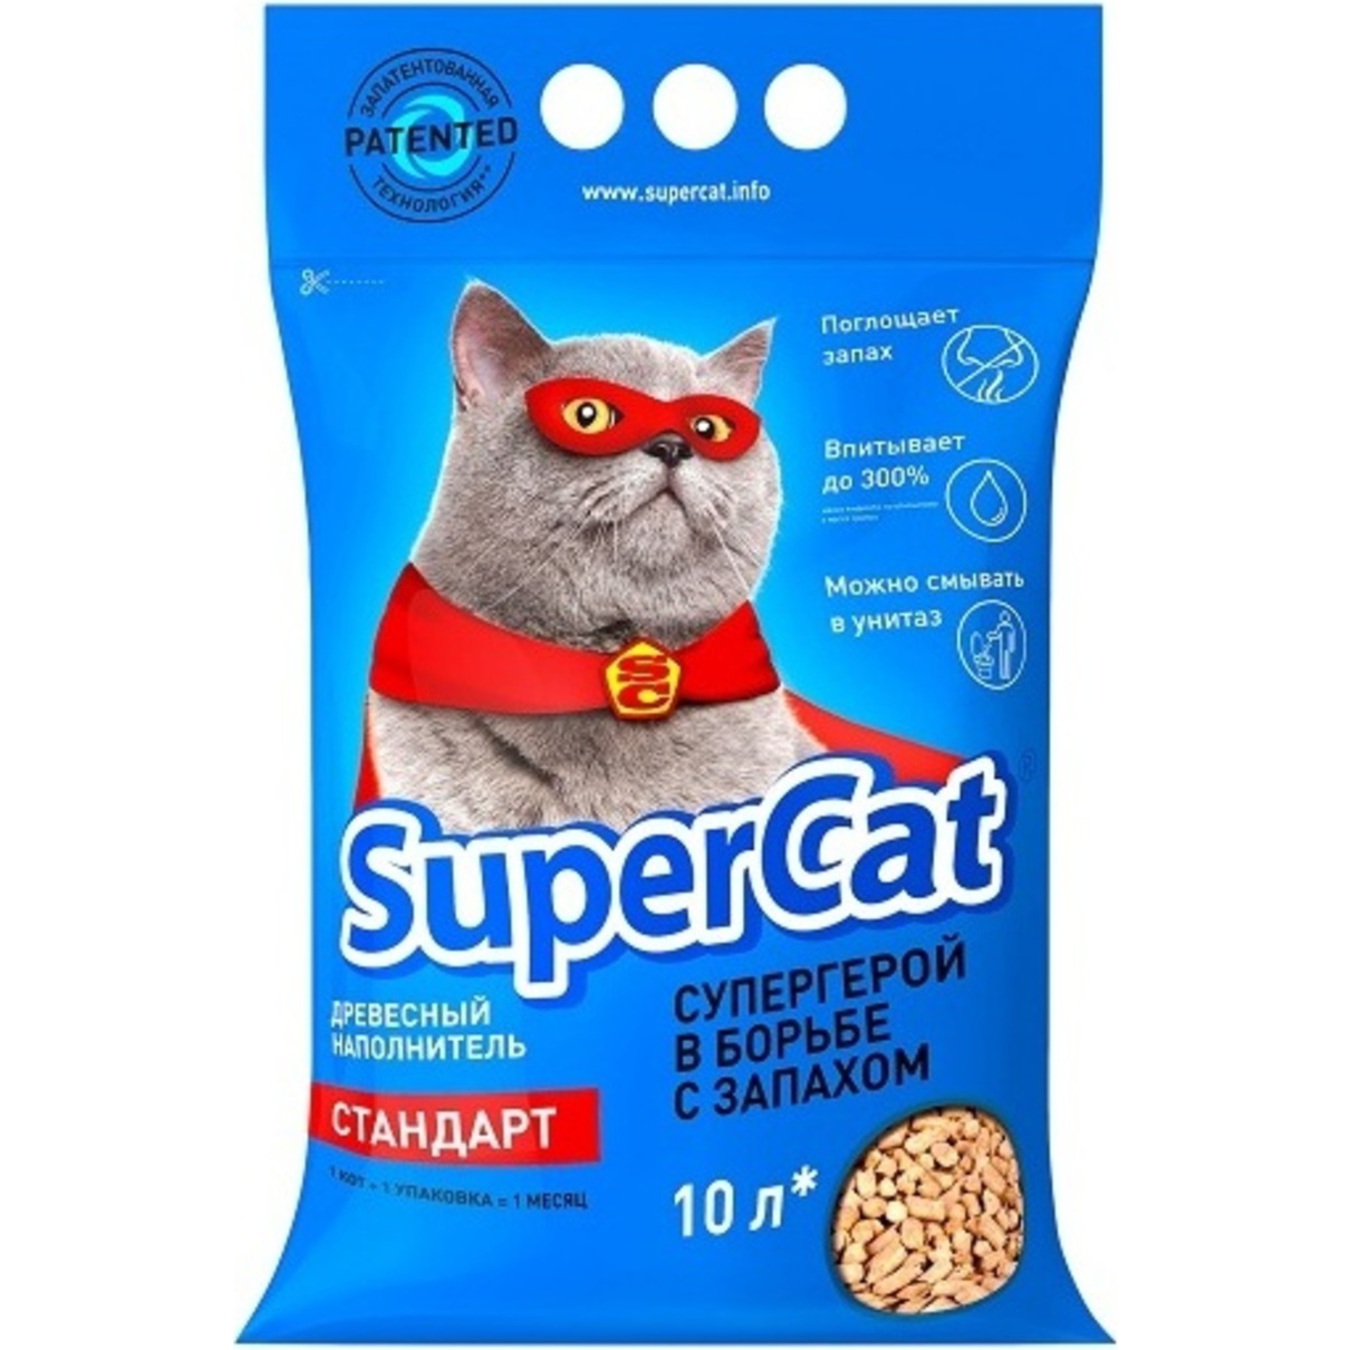 Наповнювач Super Cat Стандарт деревний гігієнічний 3кг 10л